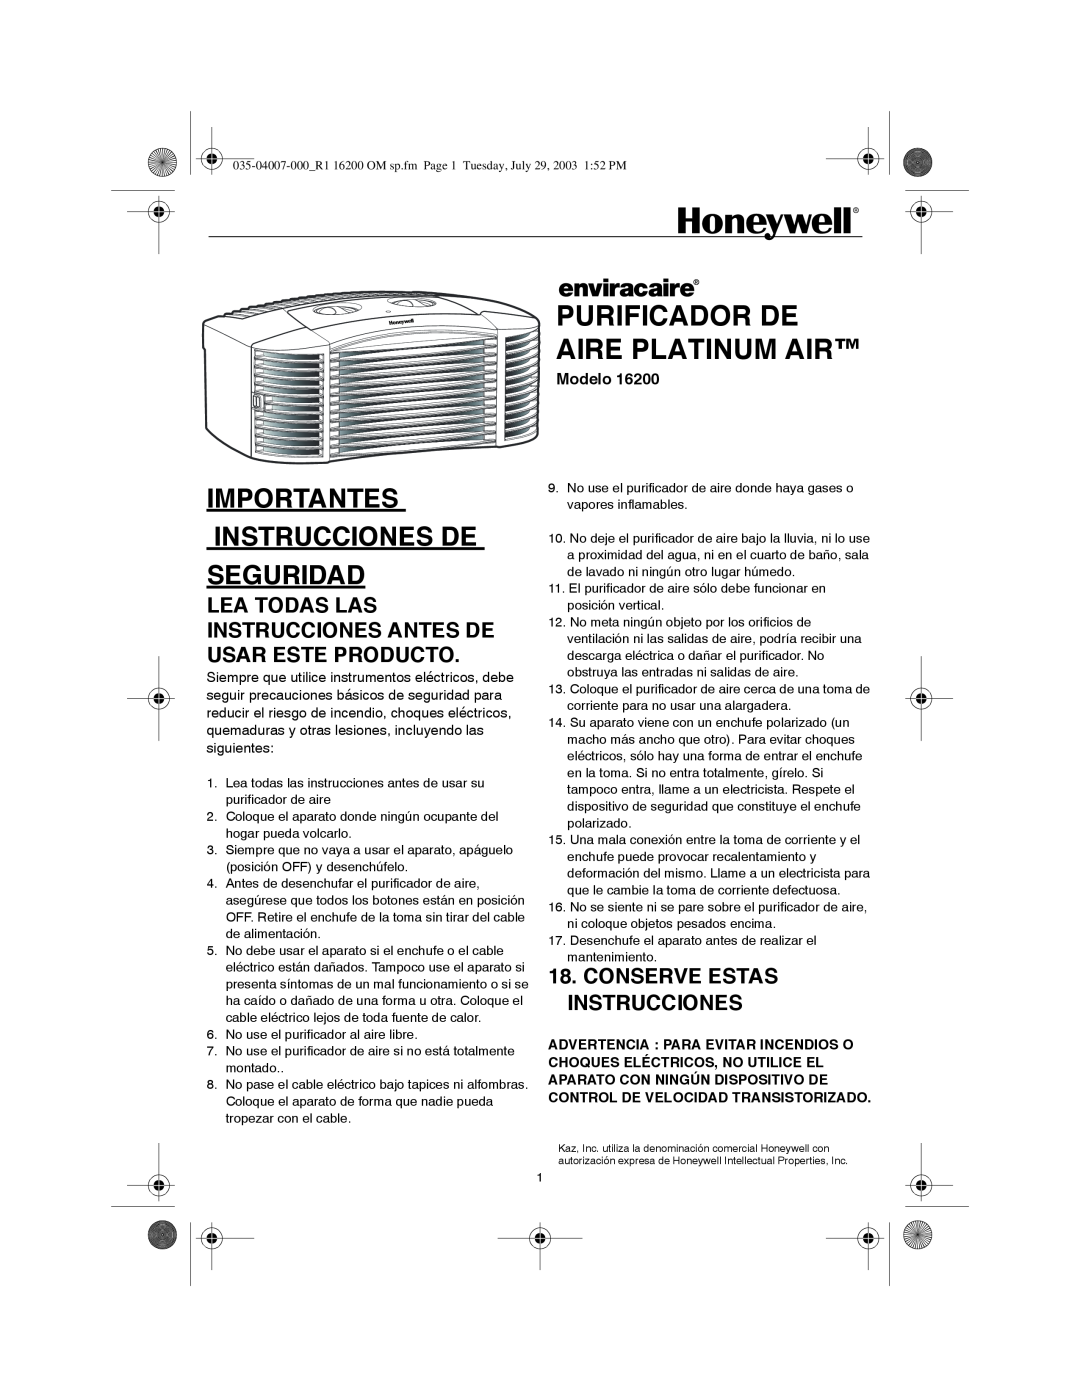 Honeywell 16200 Purificador De Aire Platinum Air, Importantes Instrucciones De Seguridad, Conserve Estas Instrucciones 